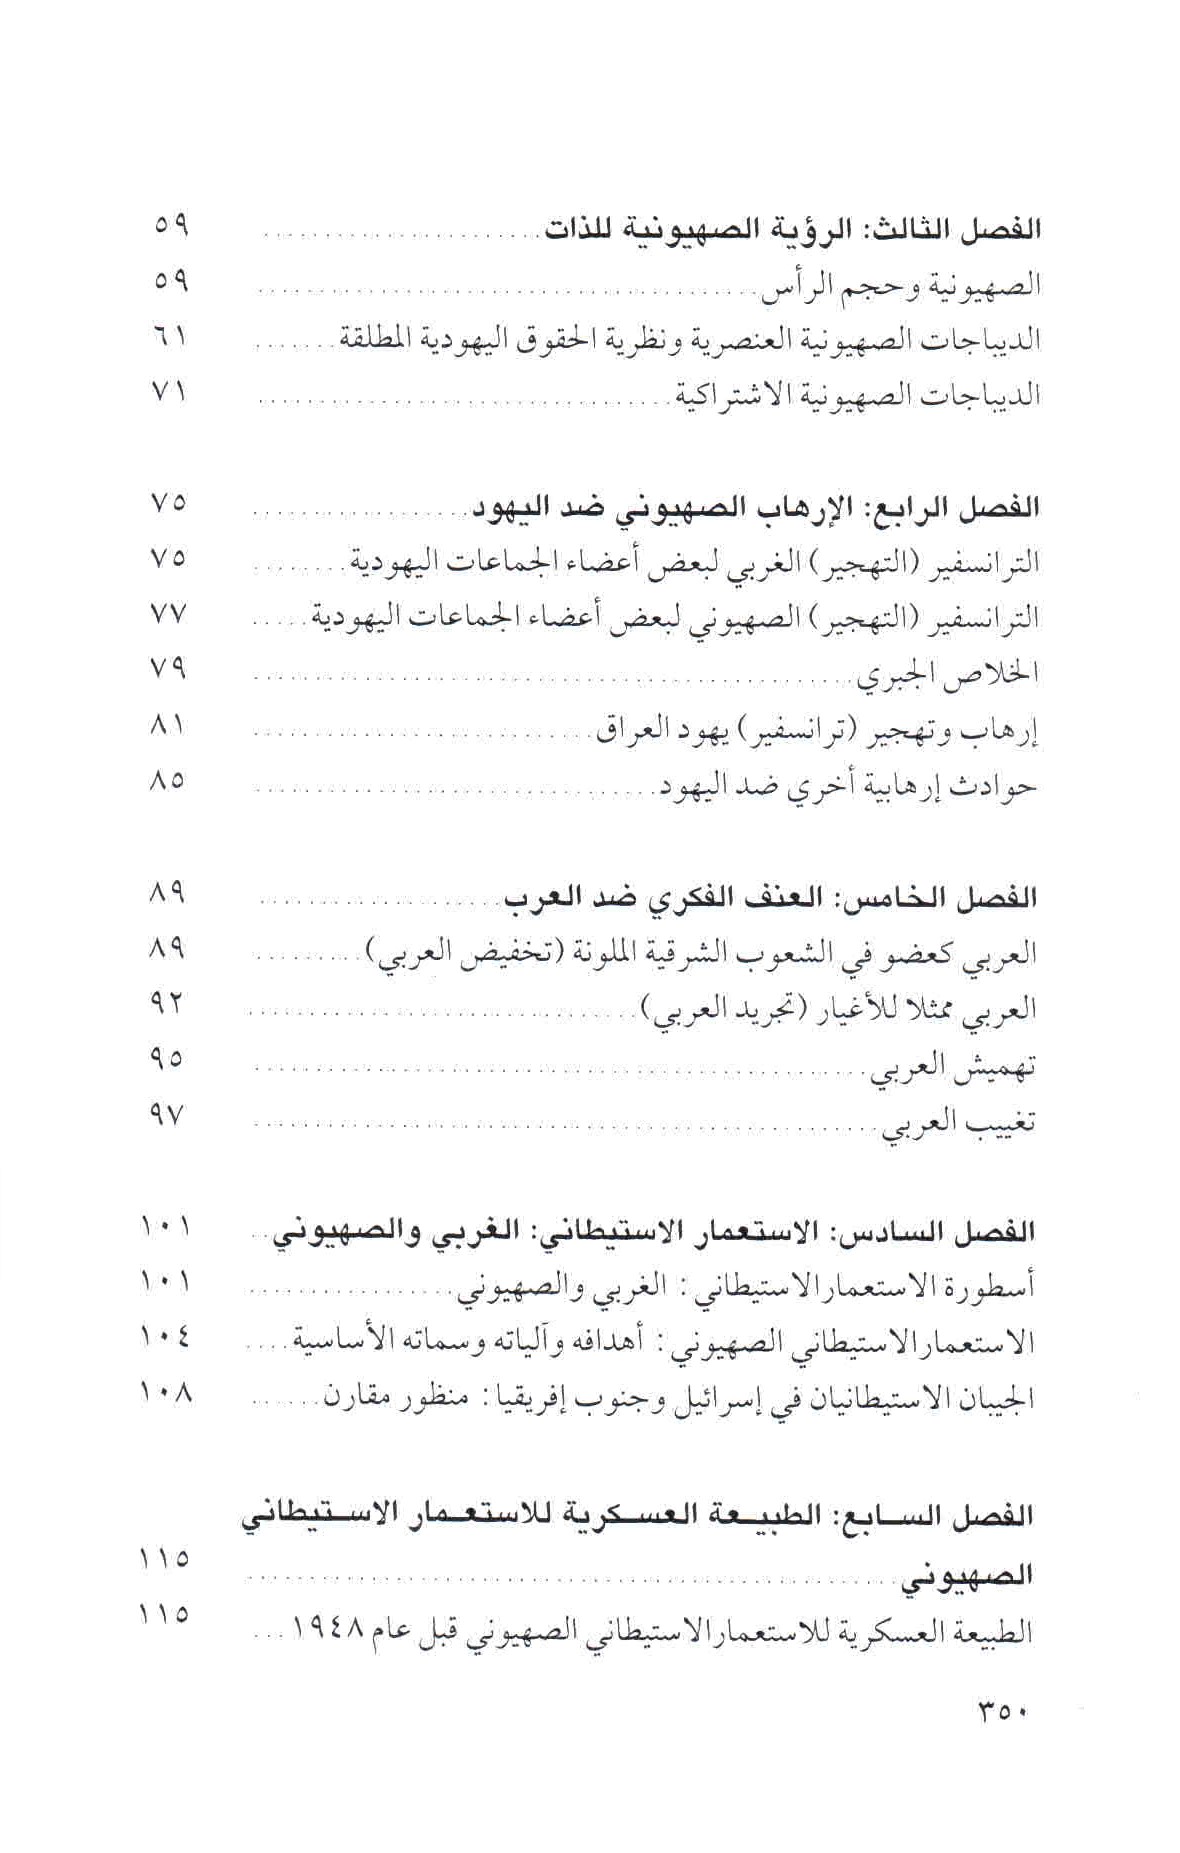  قائمة محتويات كتاب الصهيونية والعنف ص. 350.